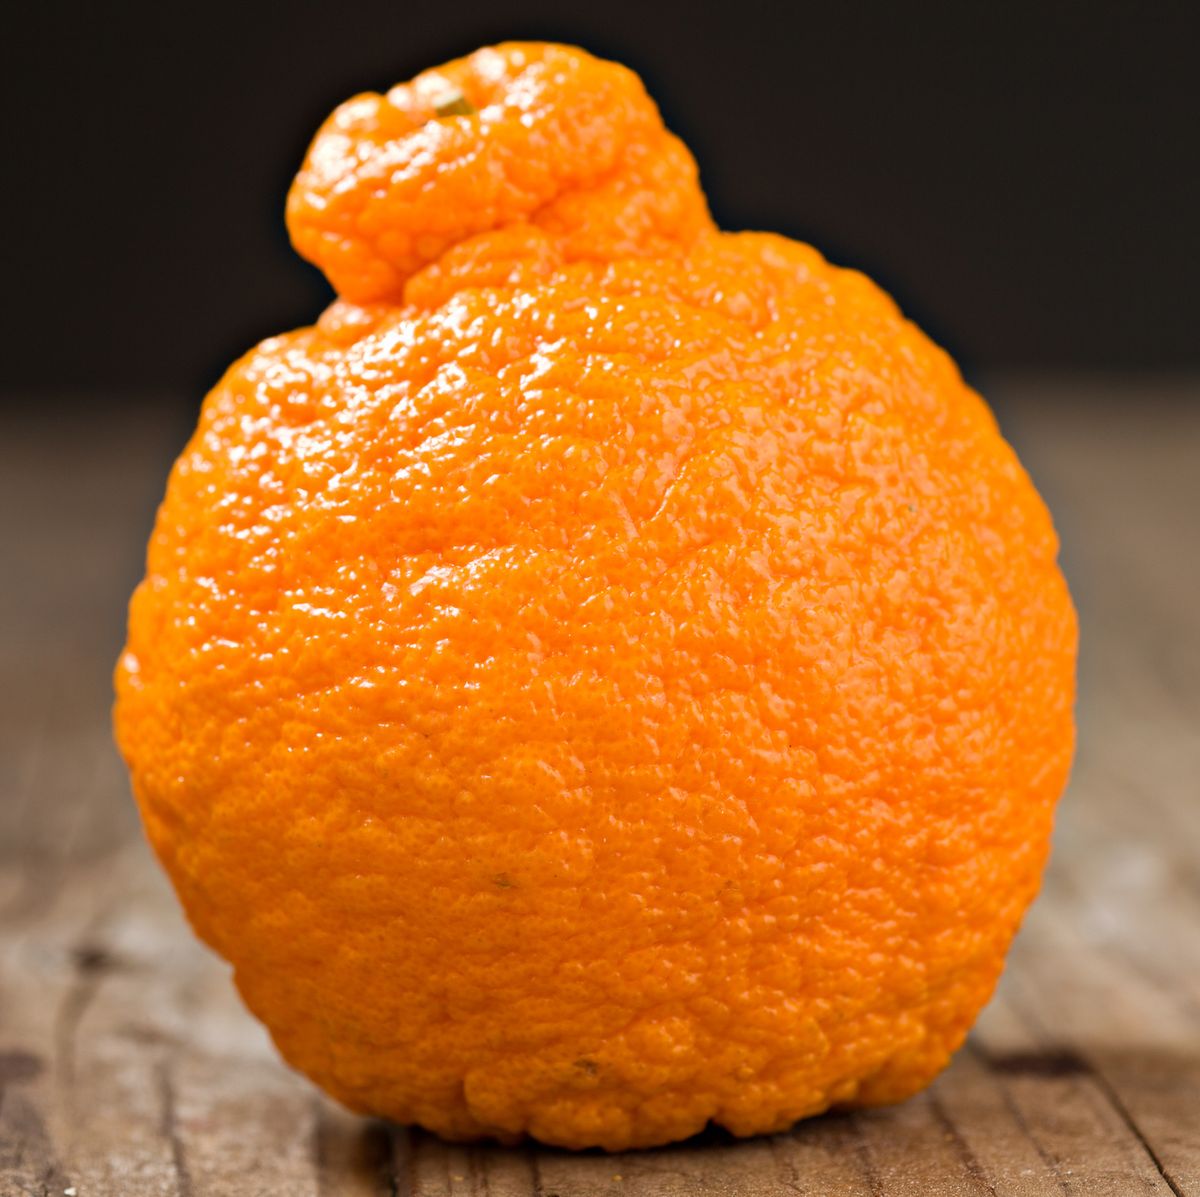 What Is A Sumo Citrus Orange? - Why Are Sumo Oranges So Expensive?